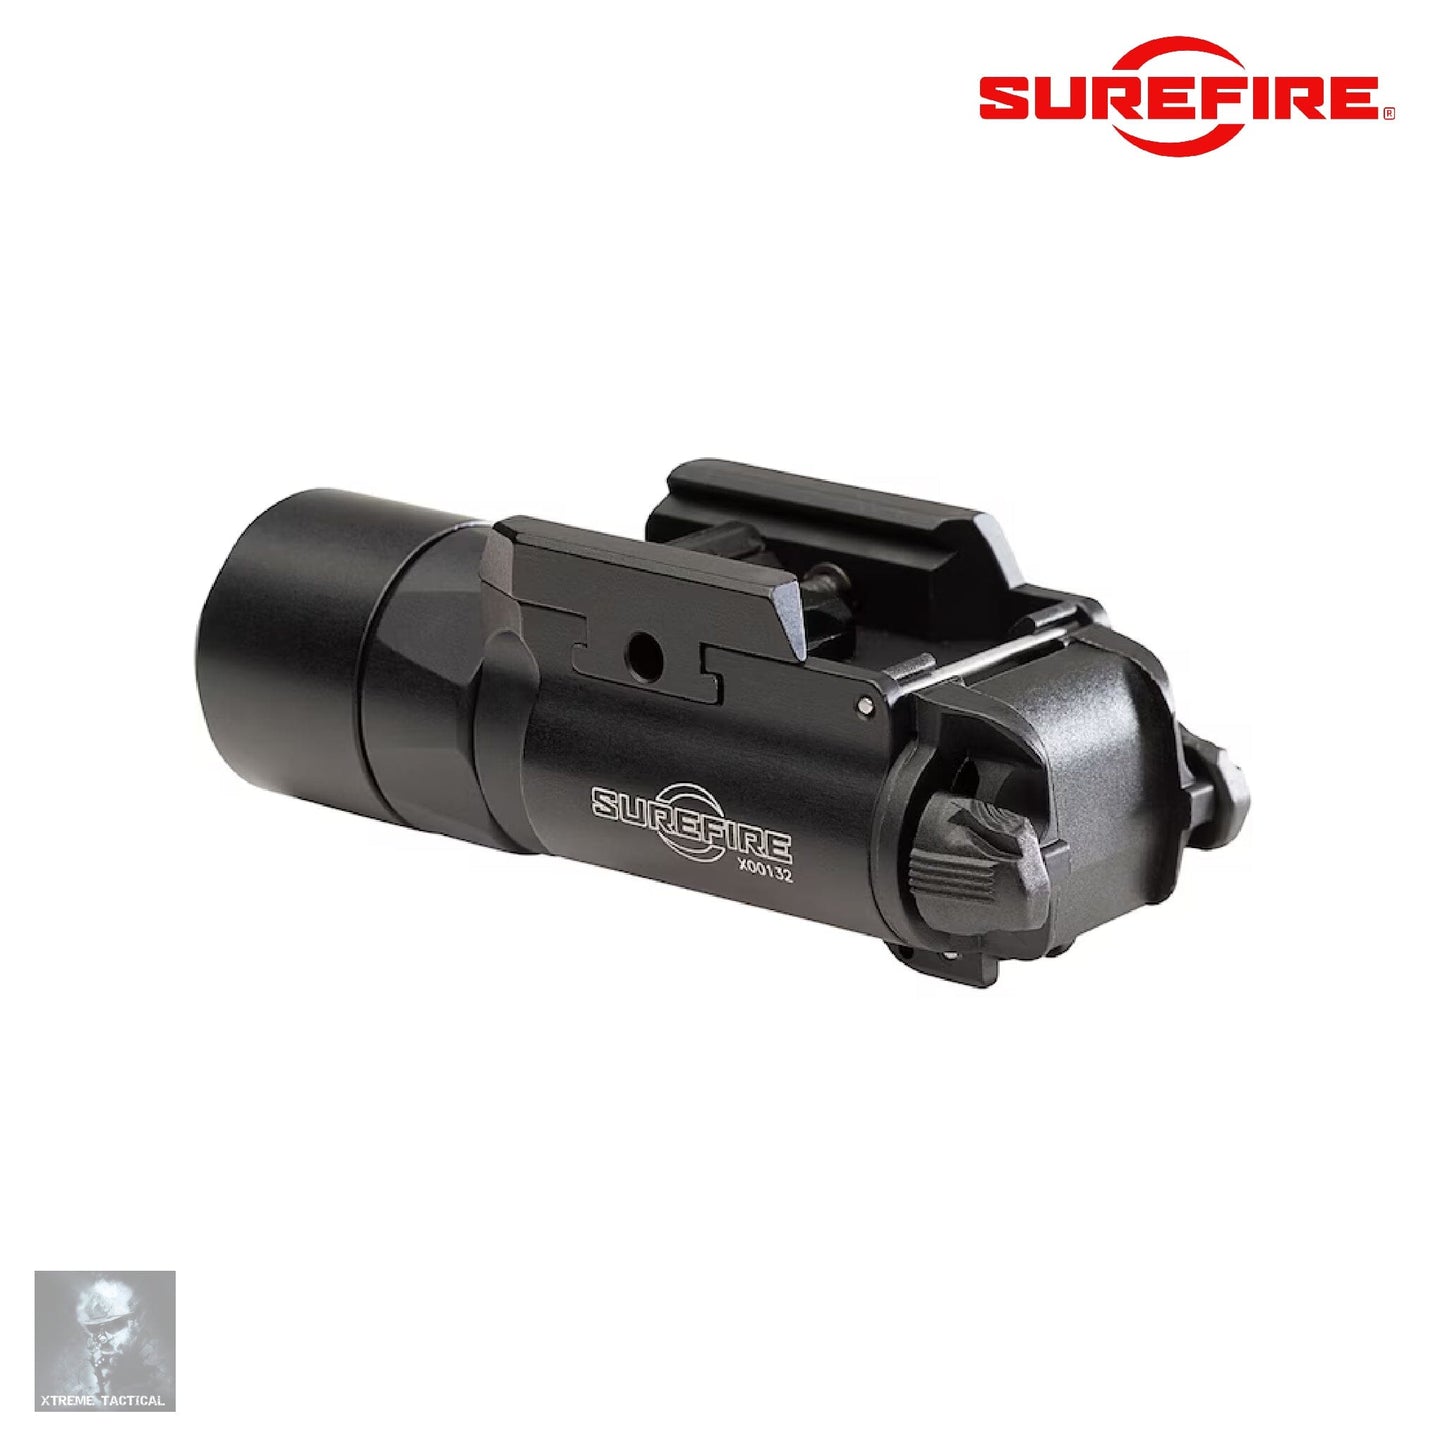 Surefire X300T-B Turbo Weapon Light Black Weapon Light SureFire 